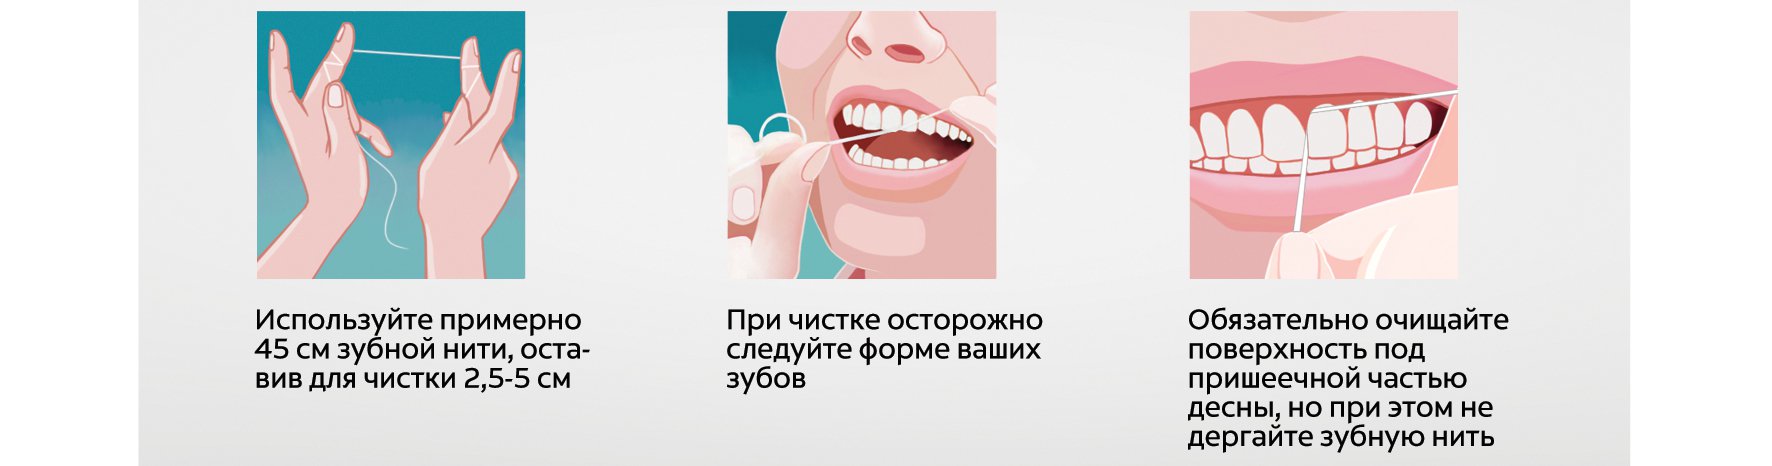 Для полости рта как применять. Способ применения зубной нити. Как правильно пользоваться зубной нитью. Зубная нить как правильно использовать. Пользование зубной нитью.